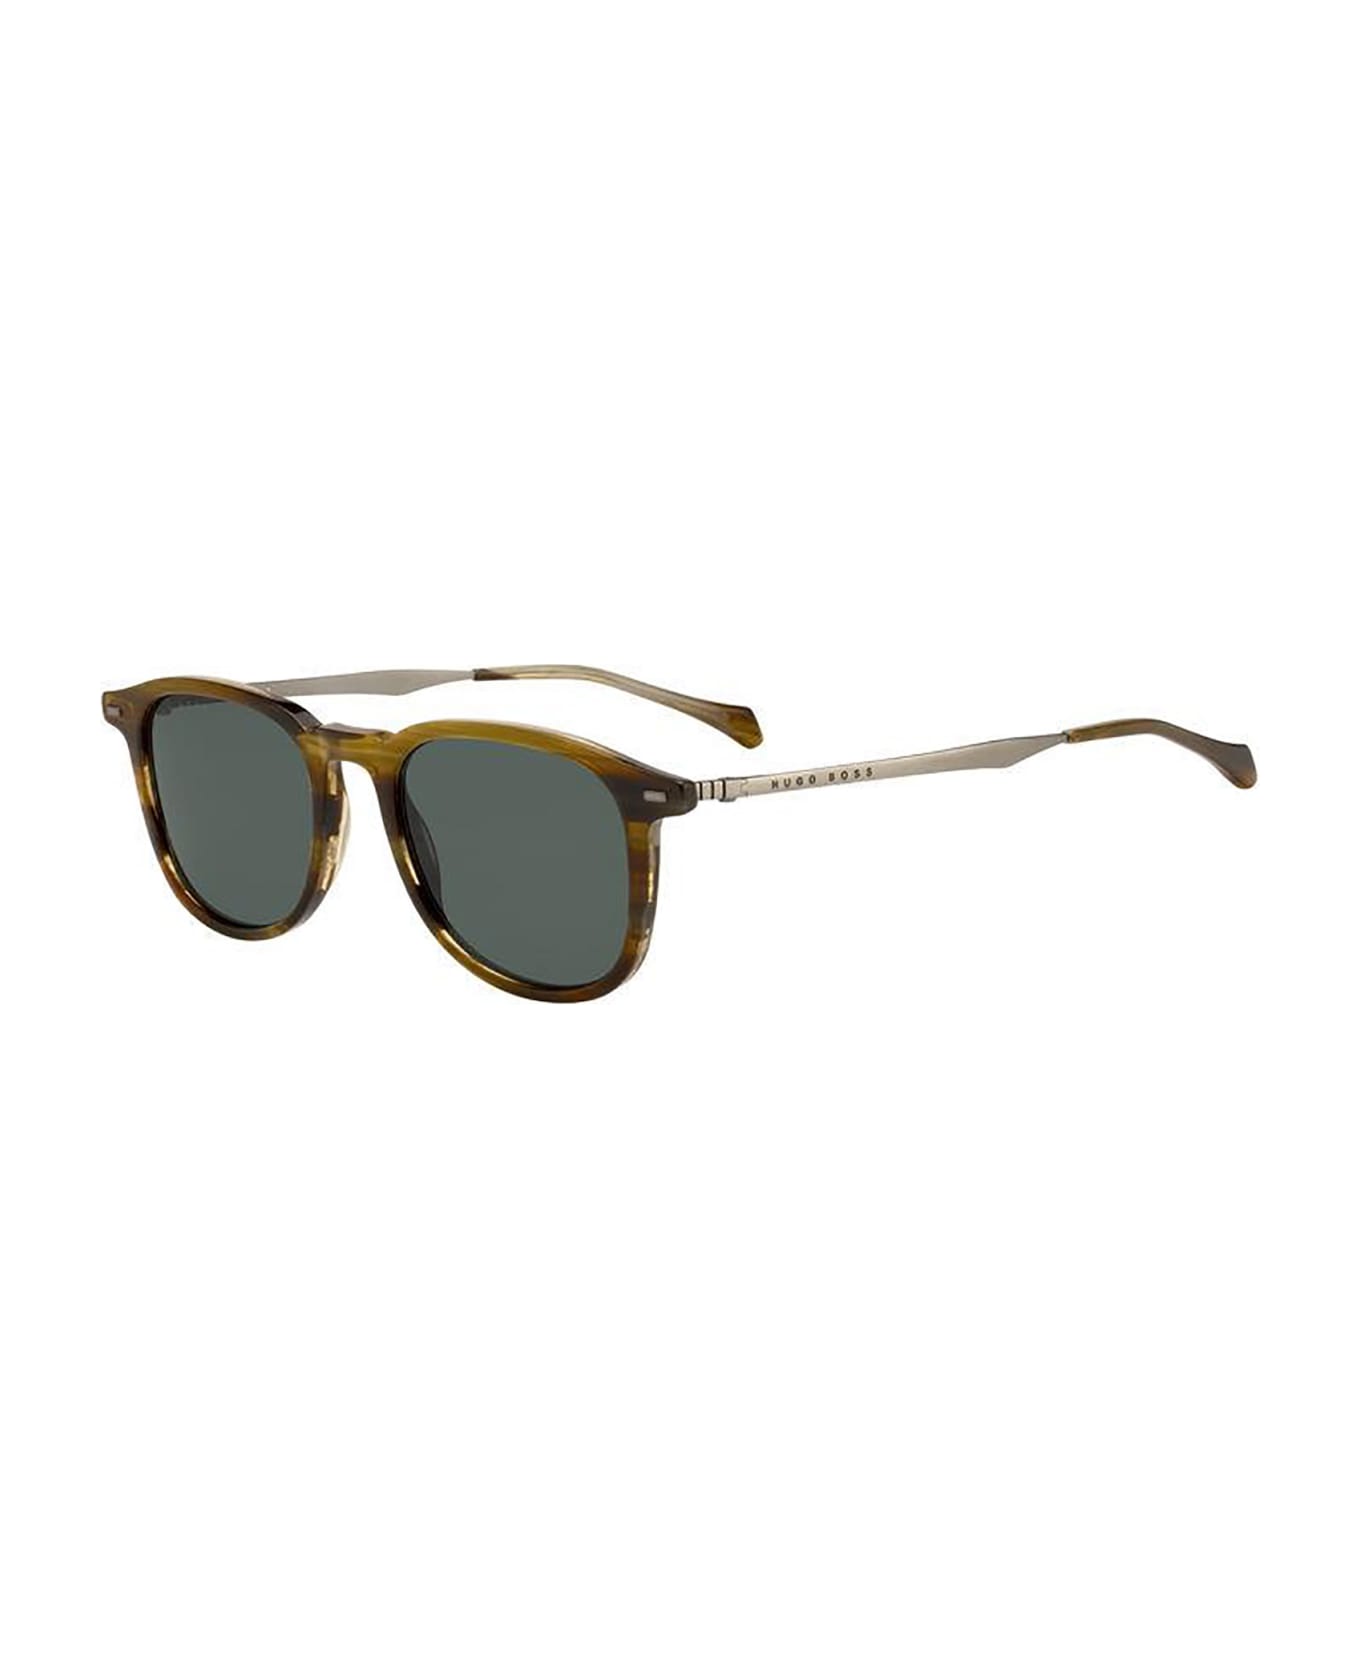 Hugo Boss BOSS 1094/S Sunglasses - /qt Brown Horn サングラス